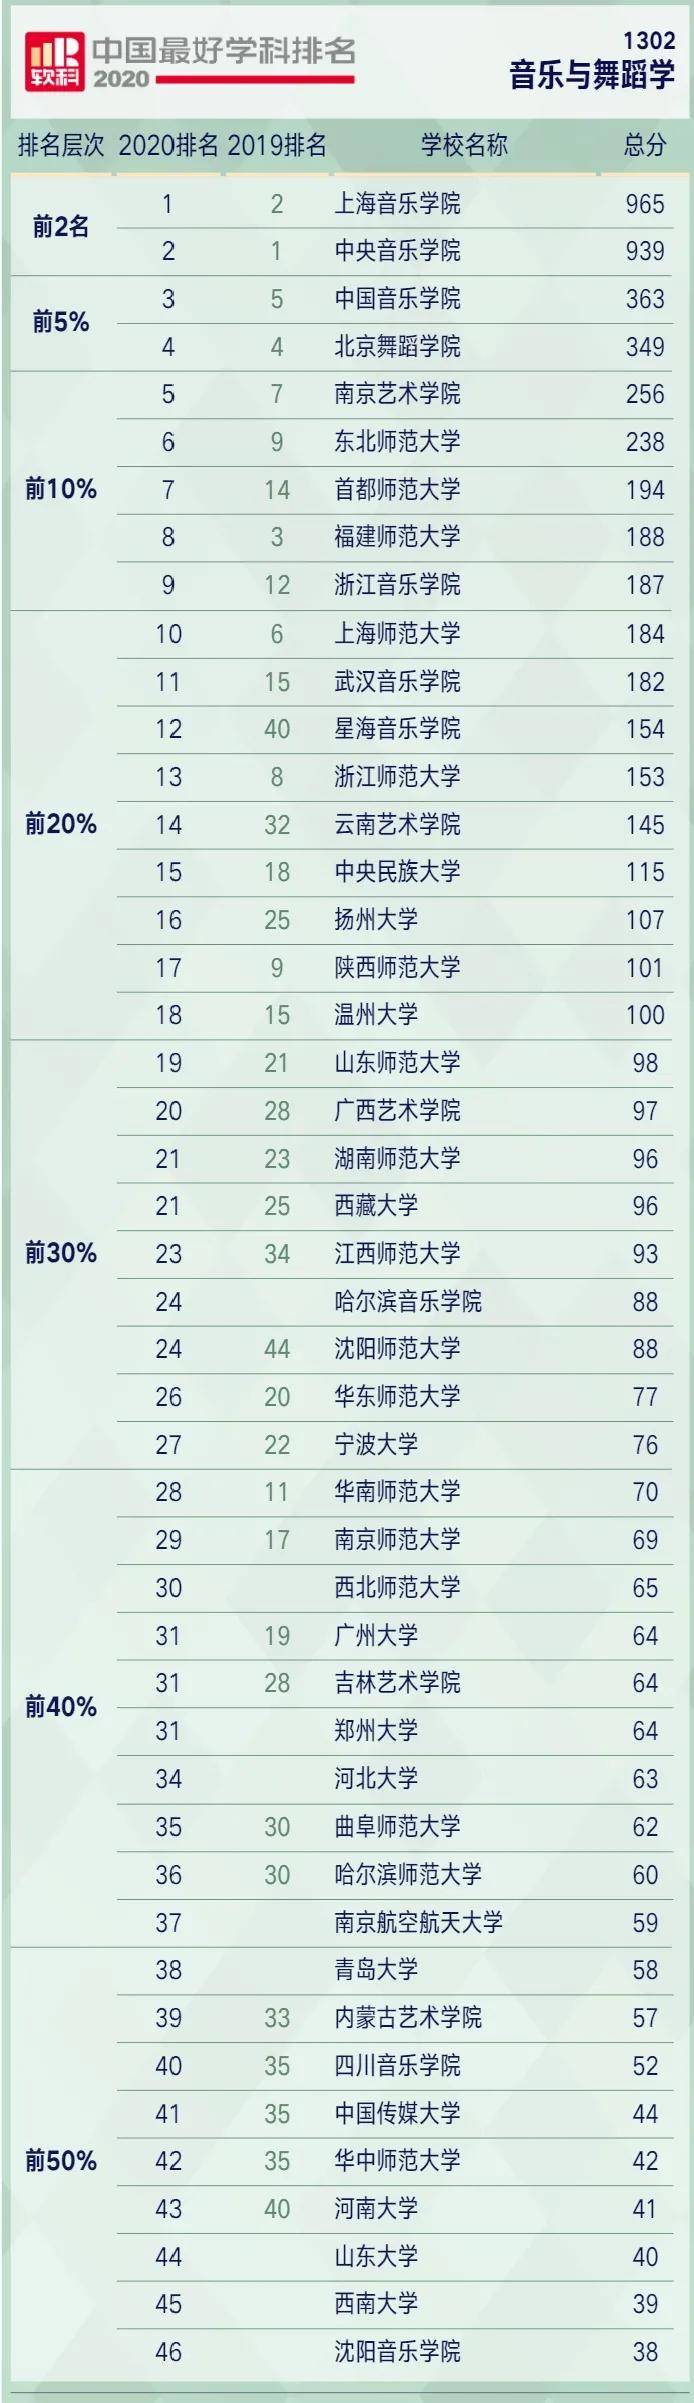 2020理科艺术排名_2020年中国最好艺术类学科排名公布,央音、上音、国音